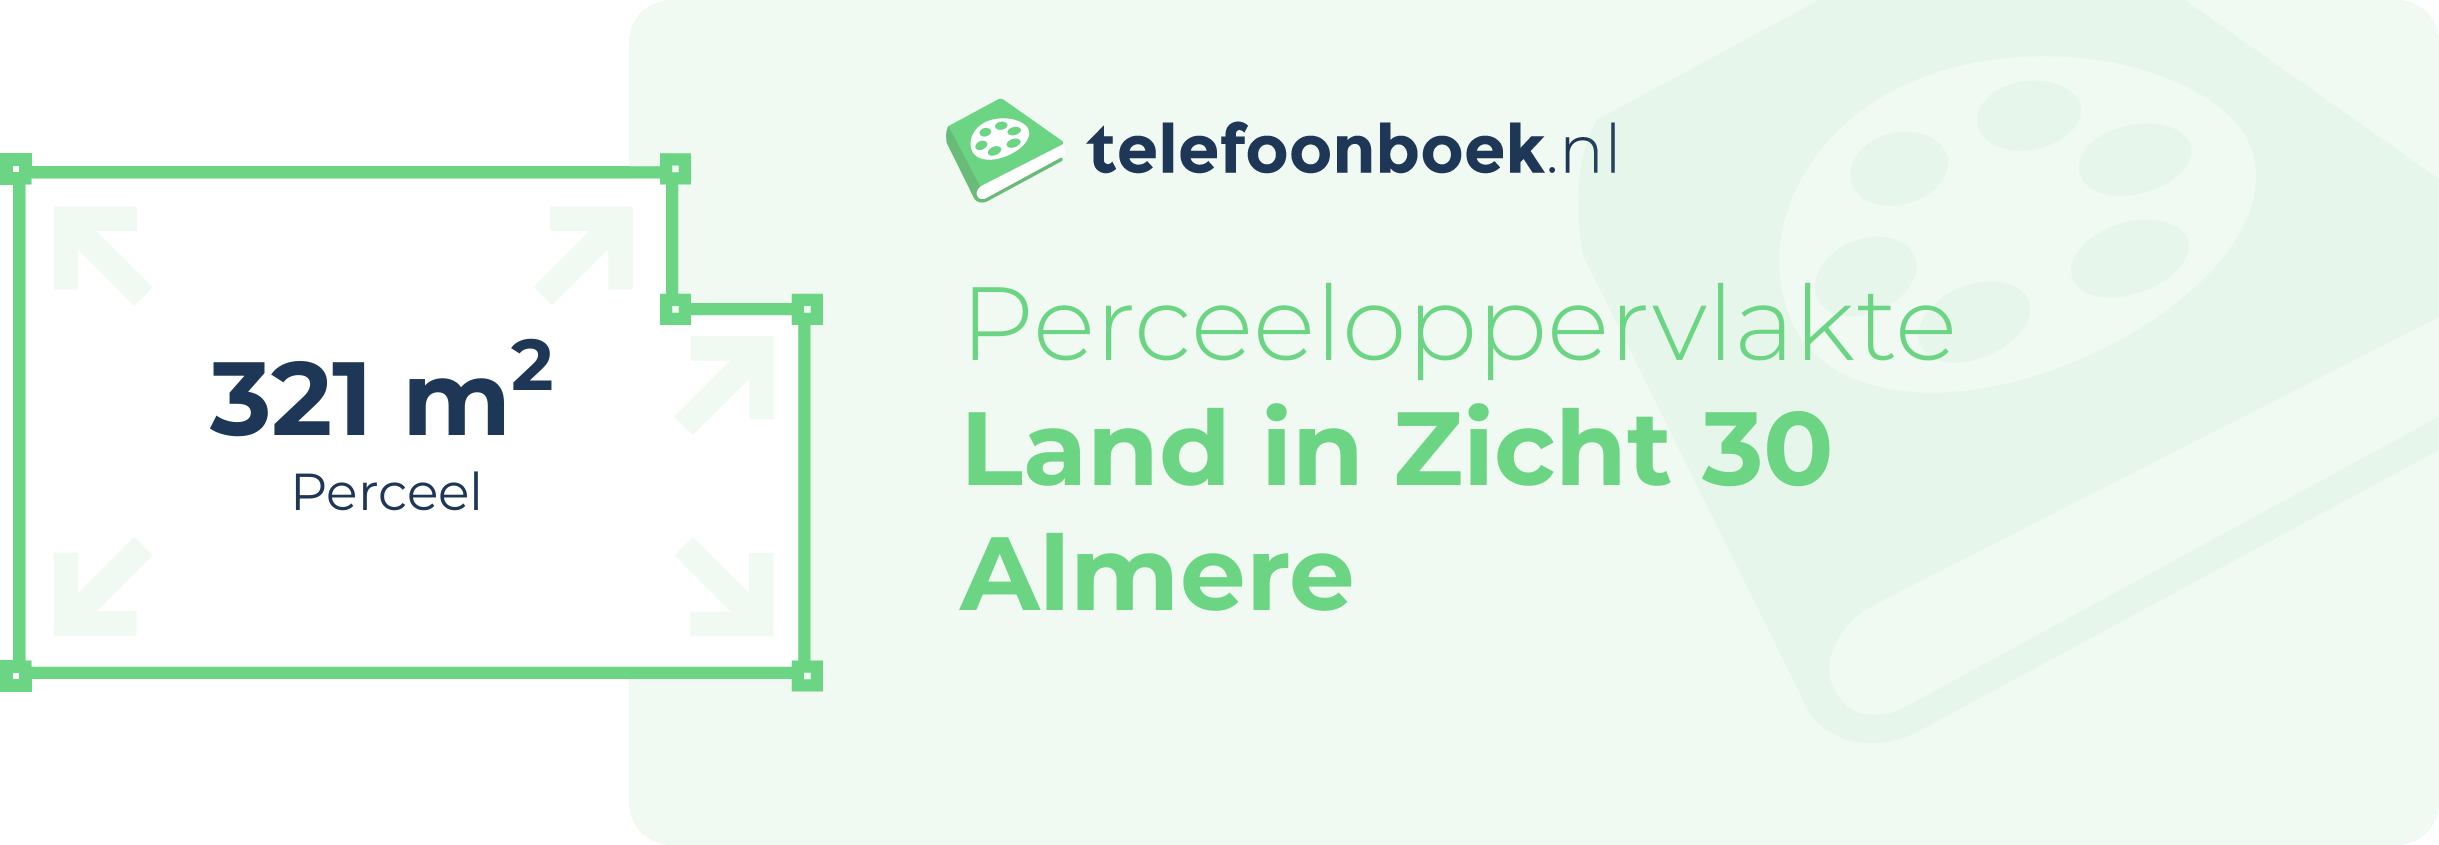 Perceeloppervlakte Land In Zicht 30 Almere